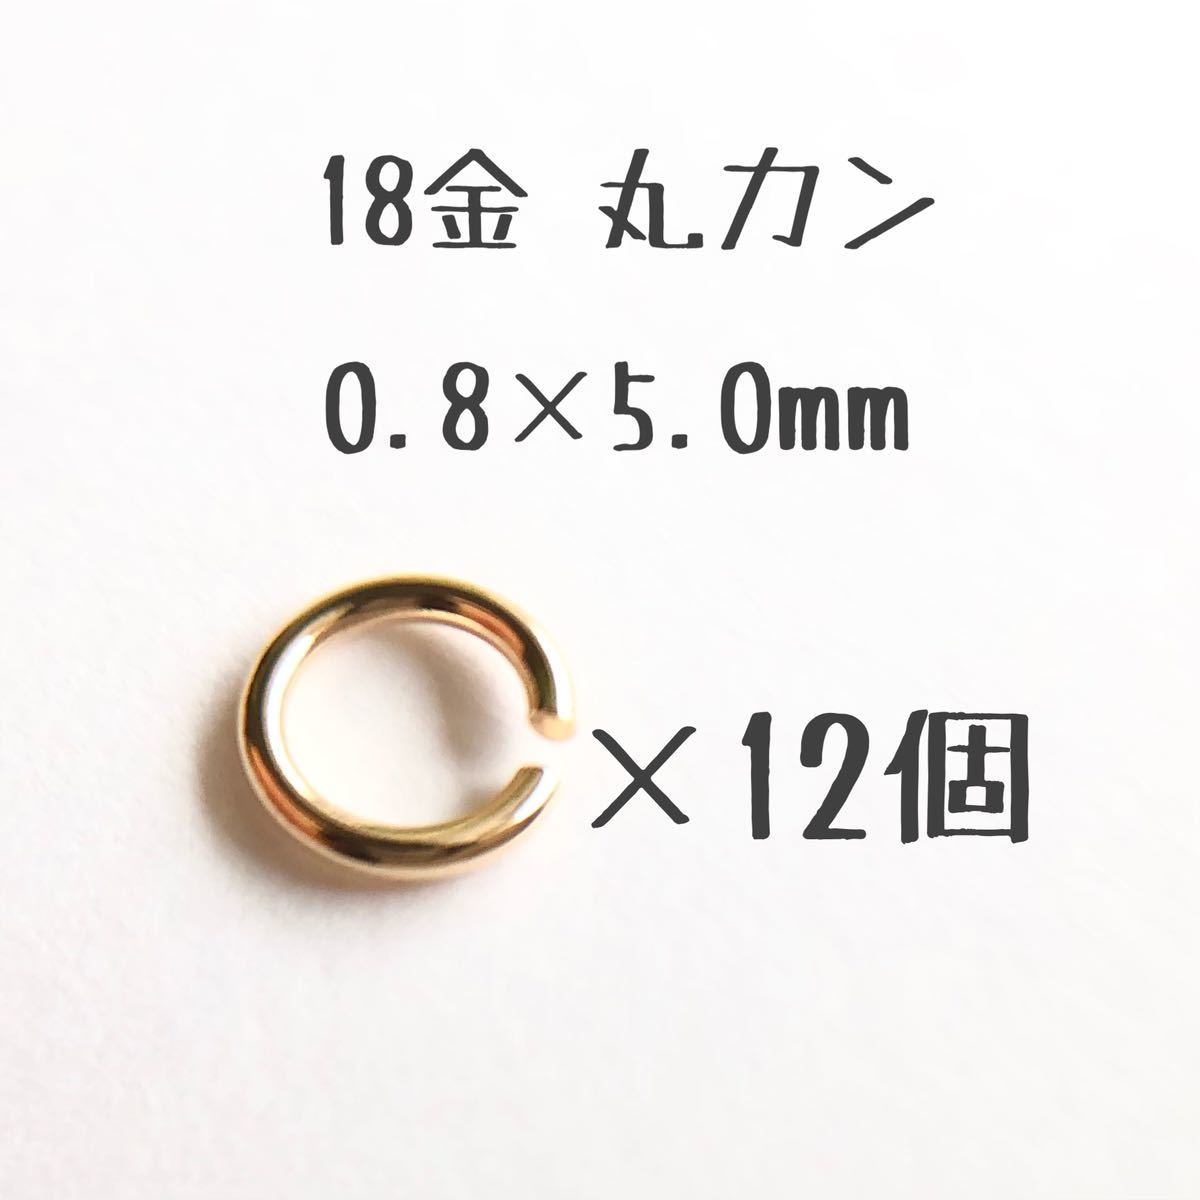 18金丸カン 0.8×5.0mm 12個売り 日本製 k18アクセサリーパーツマルカン18k 素材 線径0.8mm 外径5.0mm